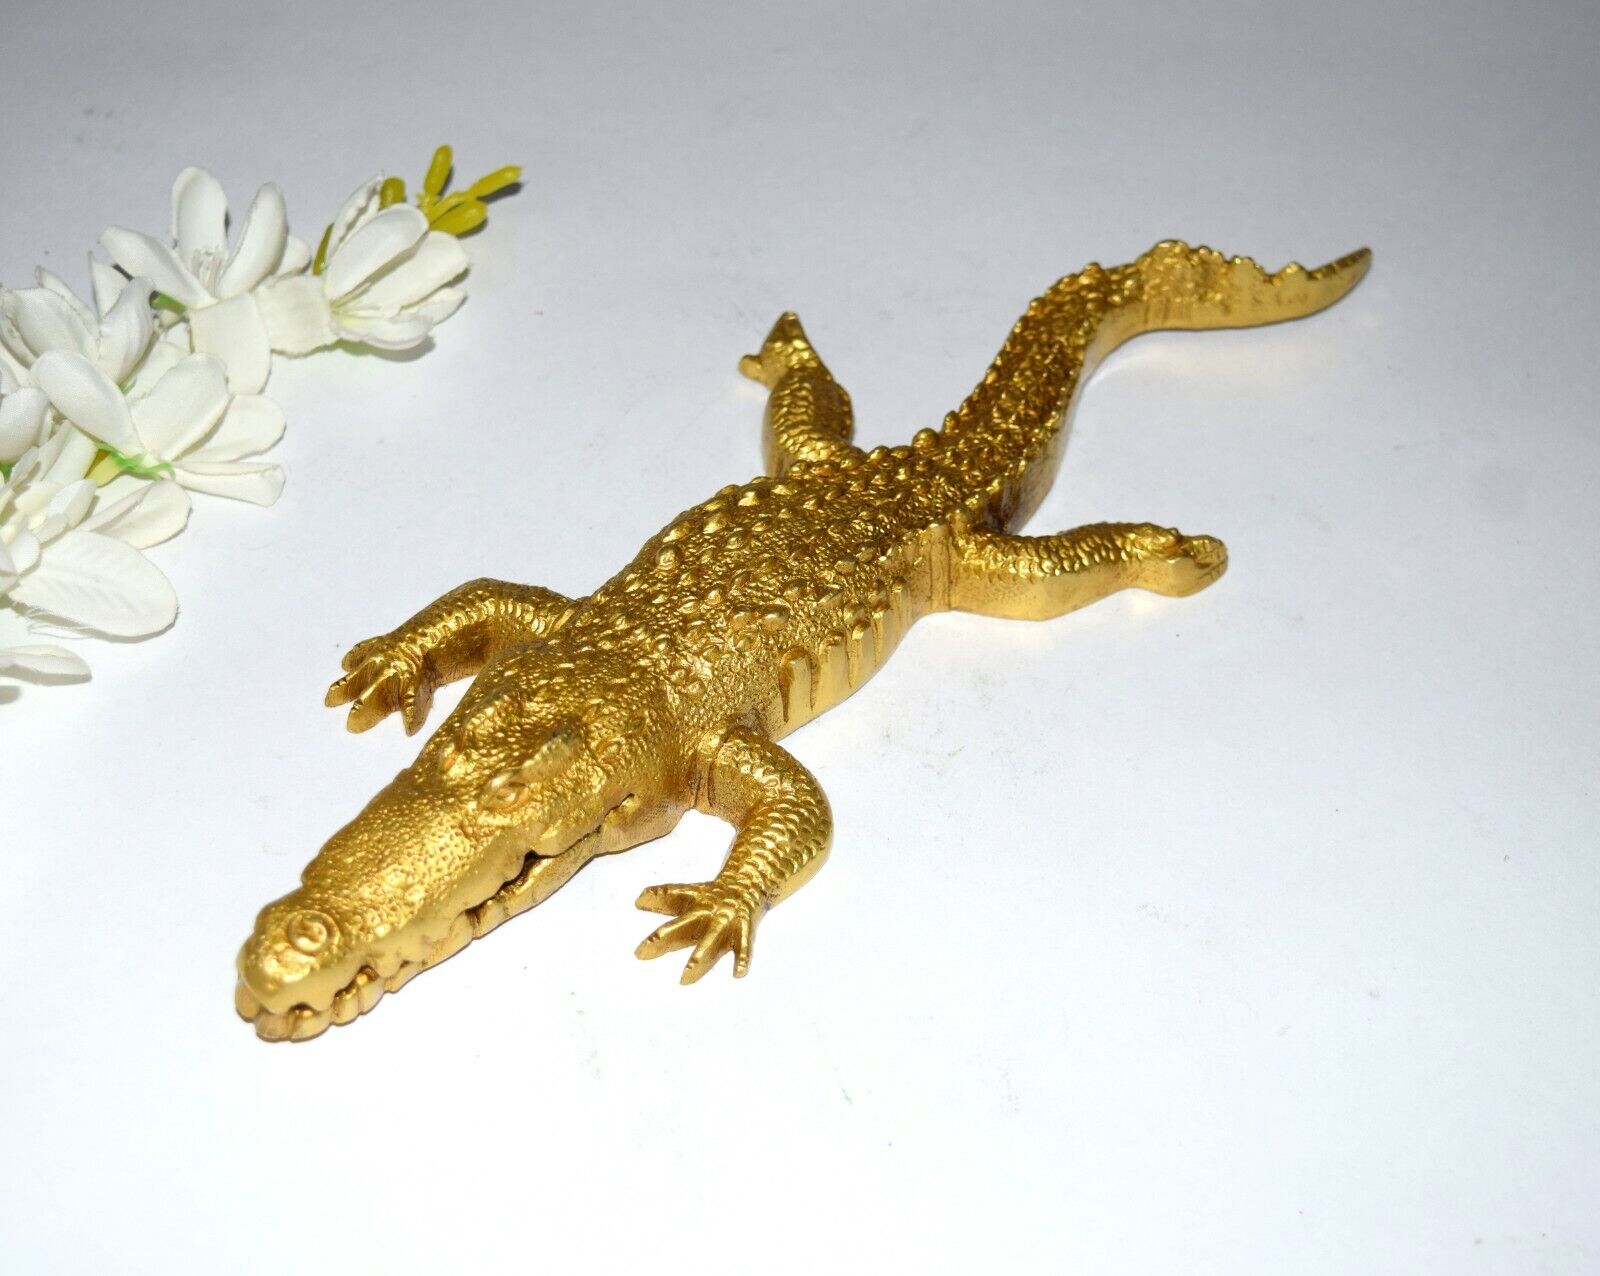 10.2'' Inches Alligator Sculpture Brass Crocodile Paperweight Showpiece EK706